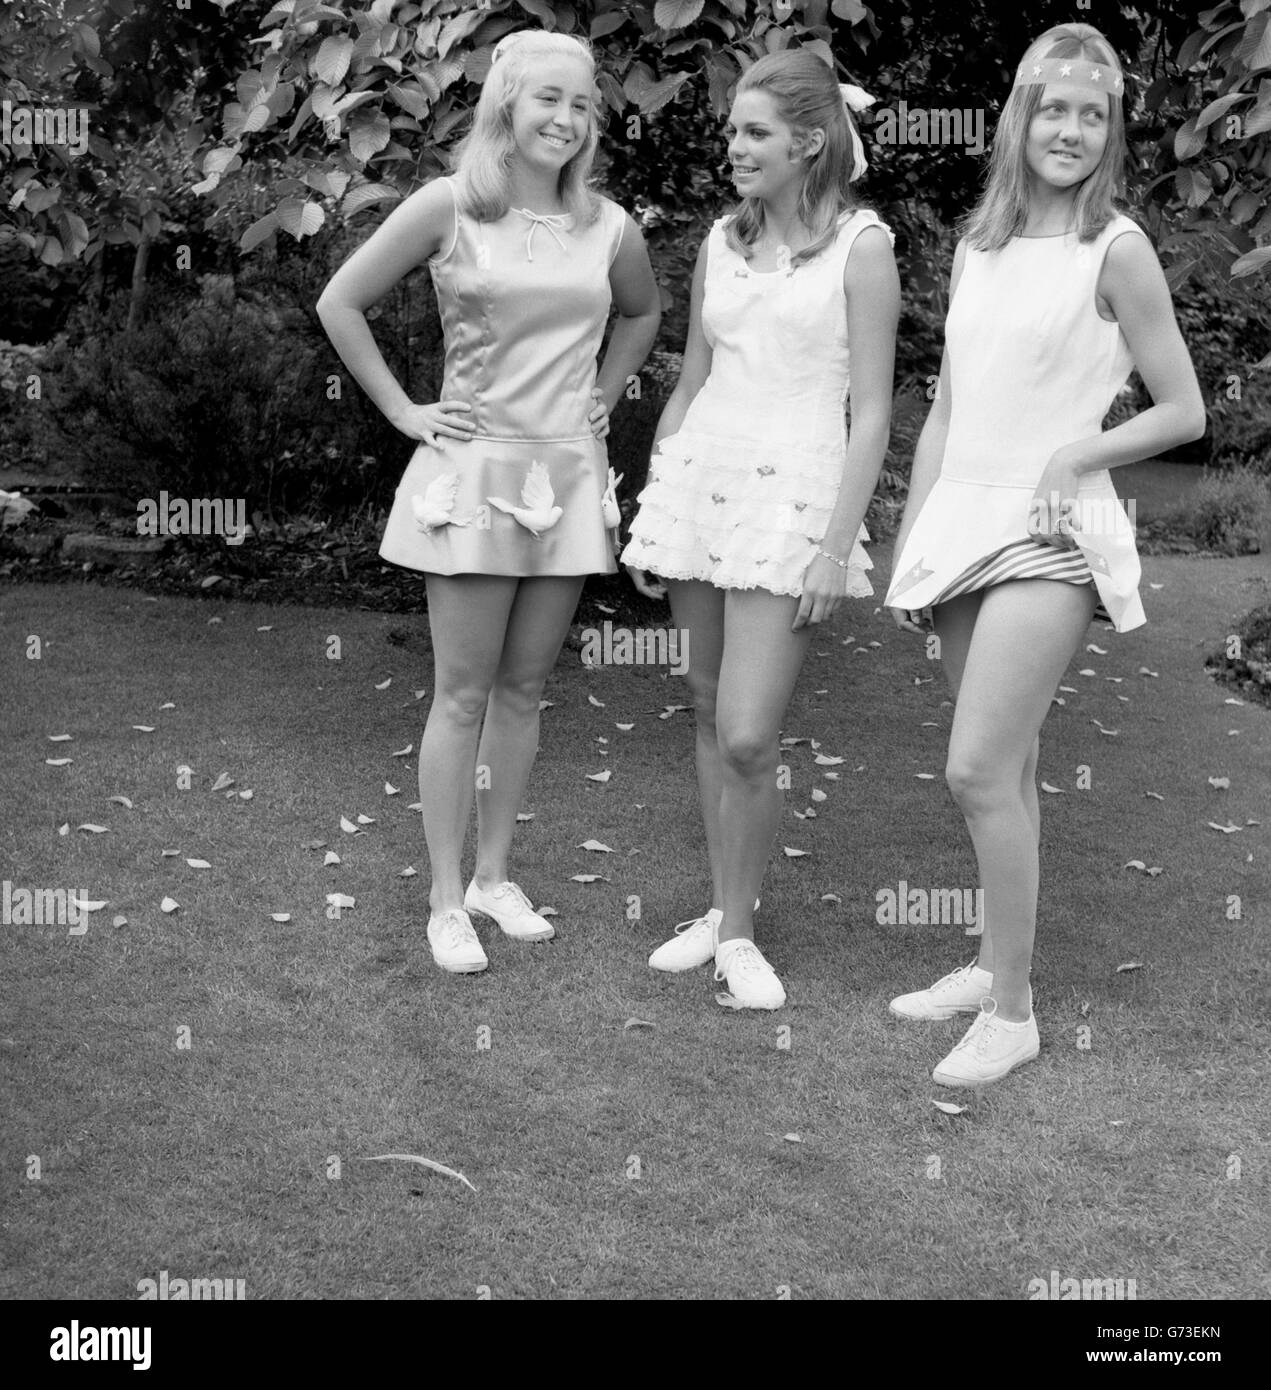 (l-r) les joueurs de tennis américains Kristy Pigeon, Betty-Ann Grubb et Peaches Bartkowicz modèle Teddy Tinling avant le début de Wimbledon. Ils ont posé pour des photos sur le jardin sur le toit de Derry & Toms à Kensington. Banque D'Images